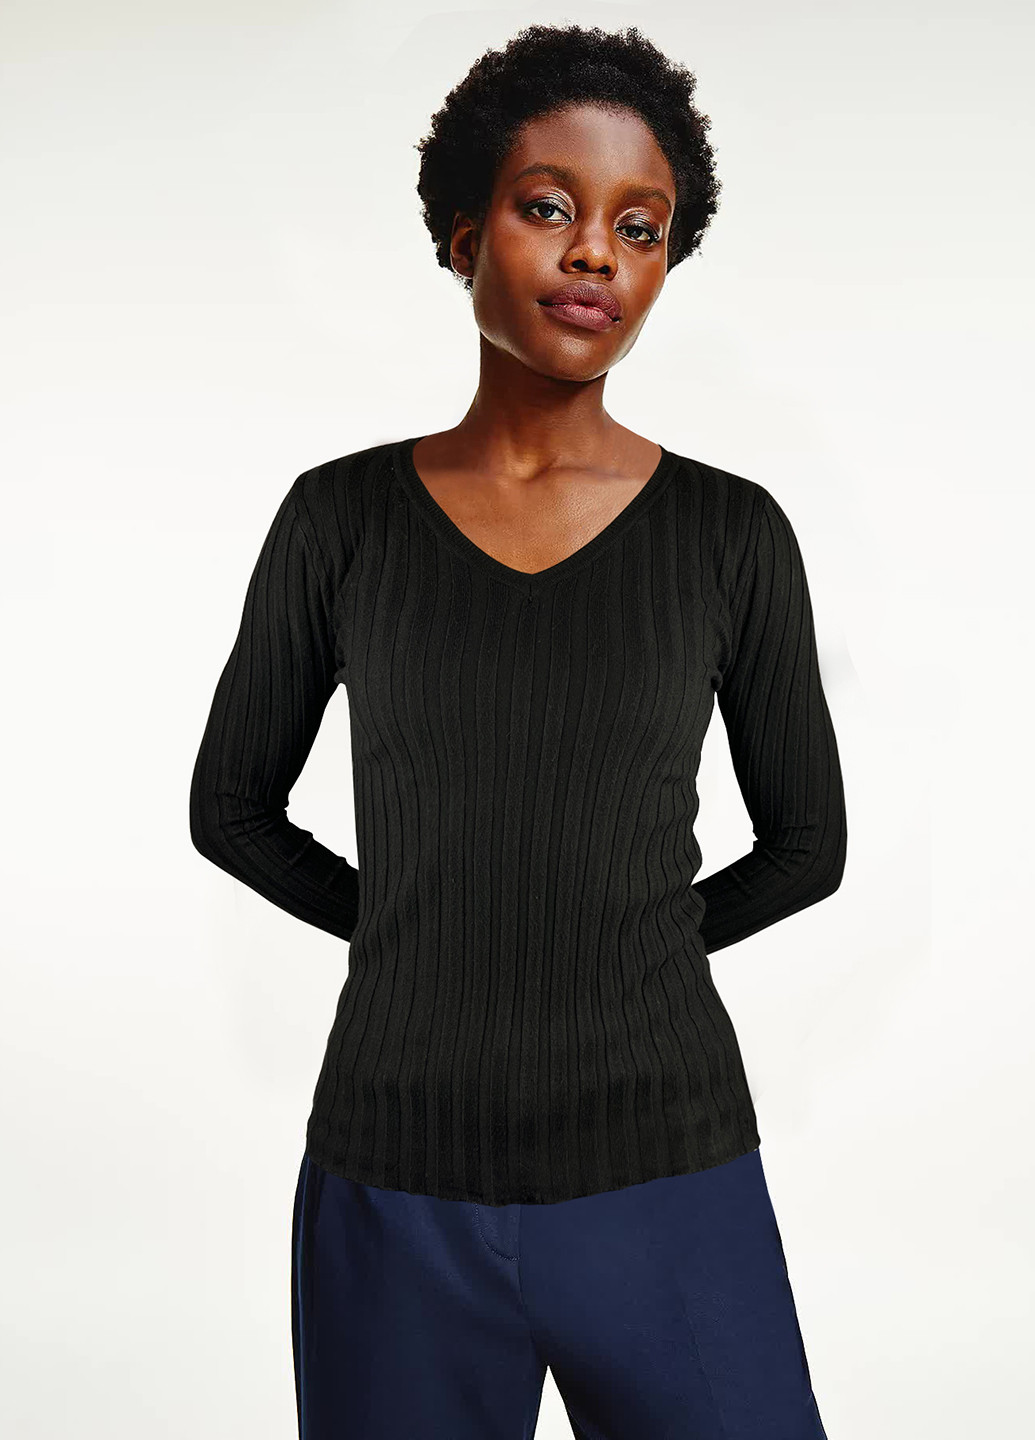 Черный демисезонный пуловер Moni&co